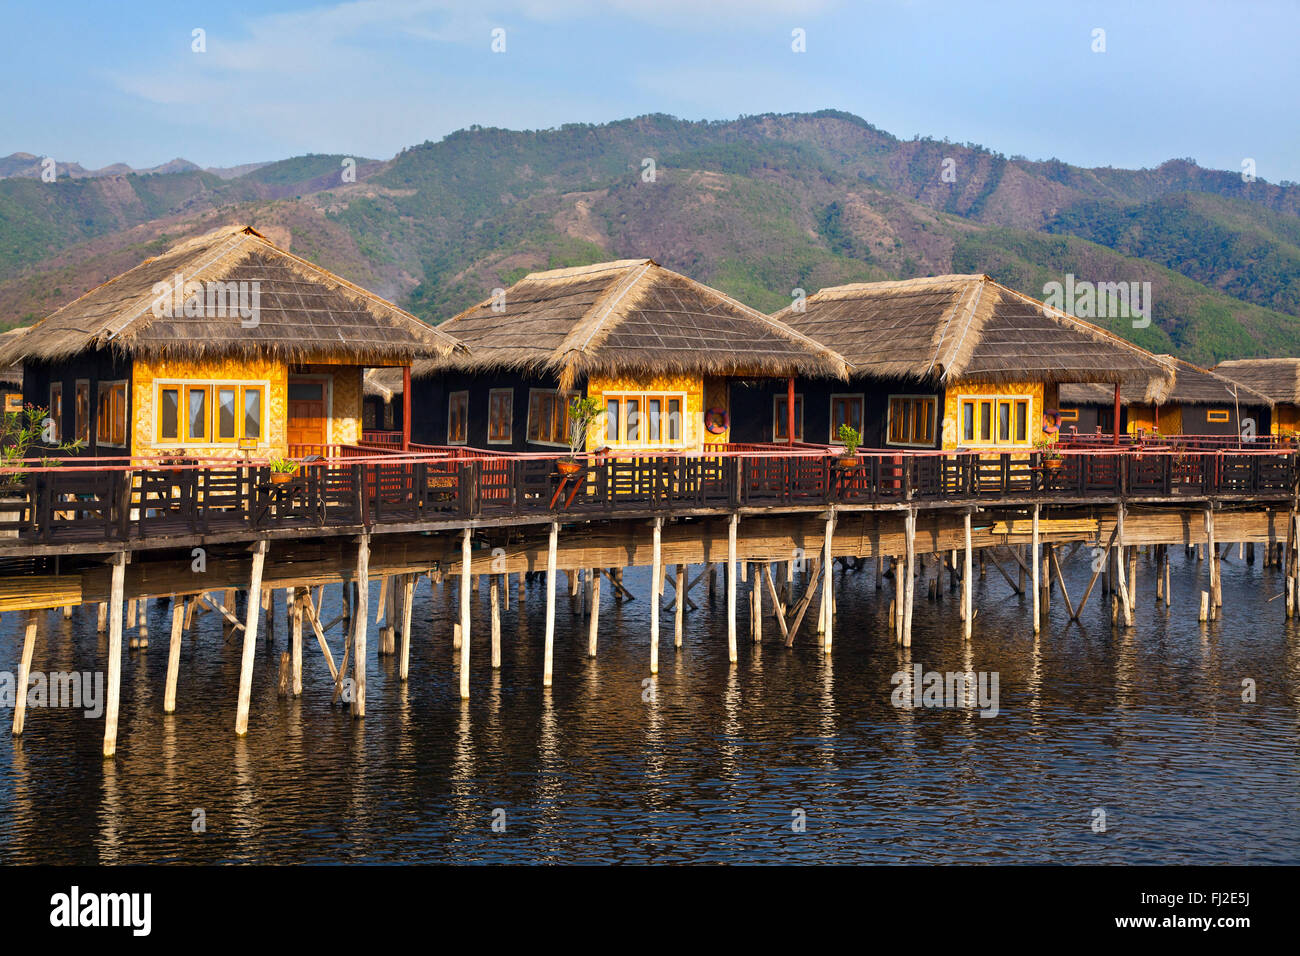 SKY Lake Resort consta de bungalos individuales construidas sobre pilotes en el lago Inle - Myanmar Foto de stock